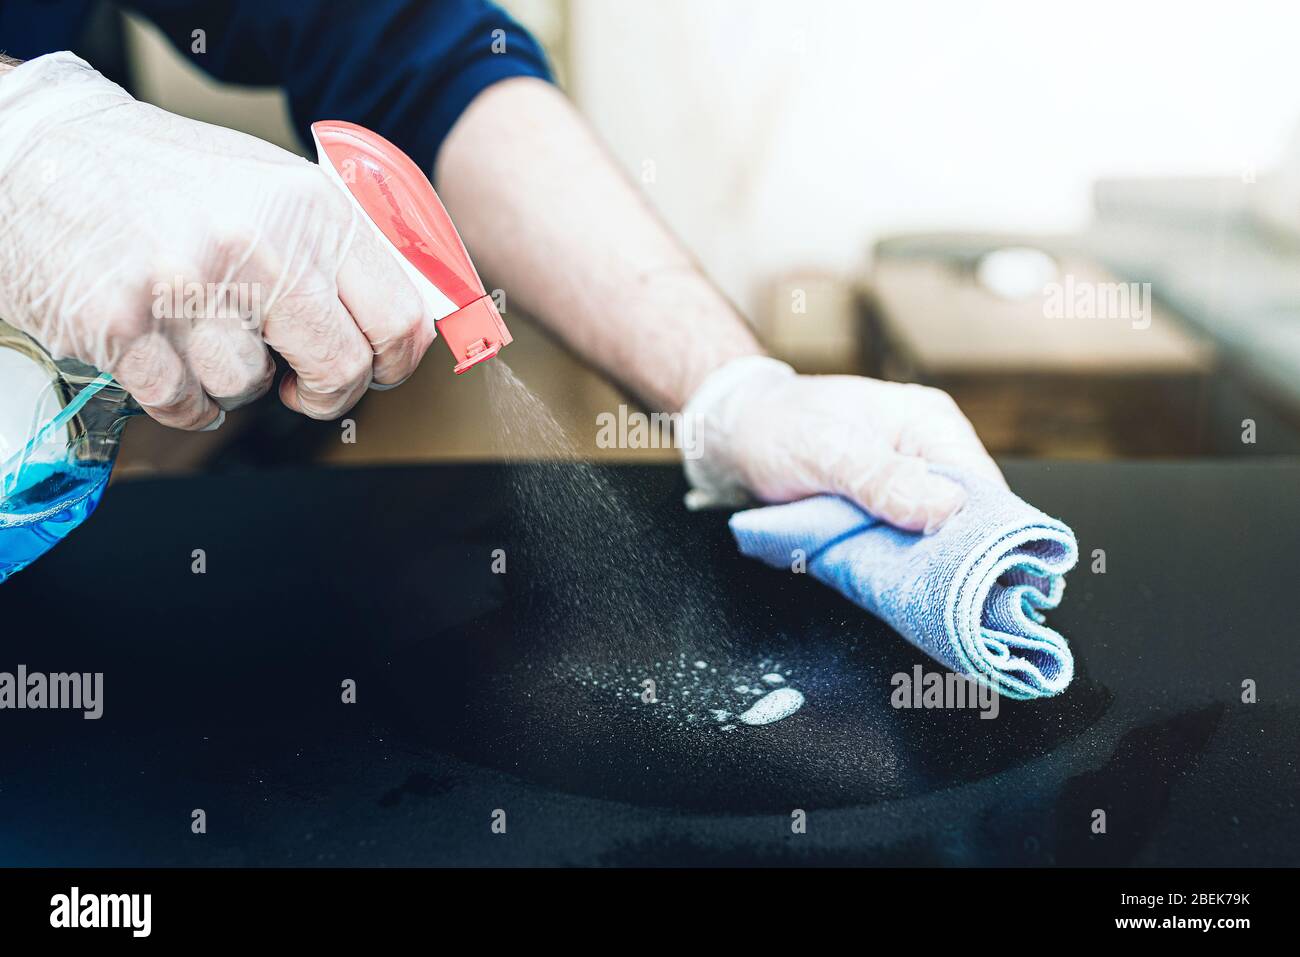 Nahaufnahme der Person, die Einweghandschuhe trägt und Desinfektionsmittel zur Reinigung der Tischoberfläche während der Coronavirus Covid-19-Pandemie verwendet Stockfoto